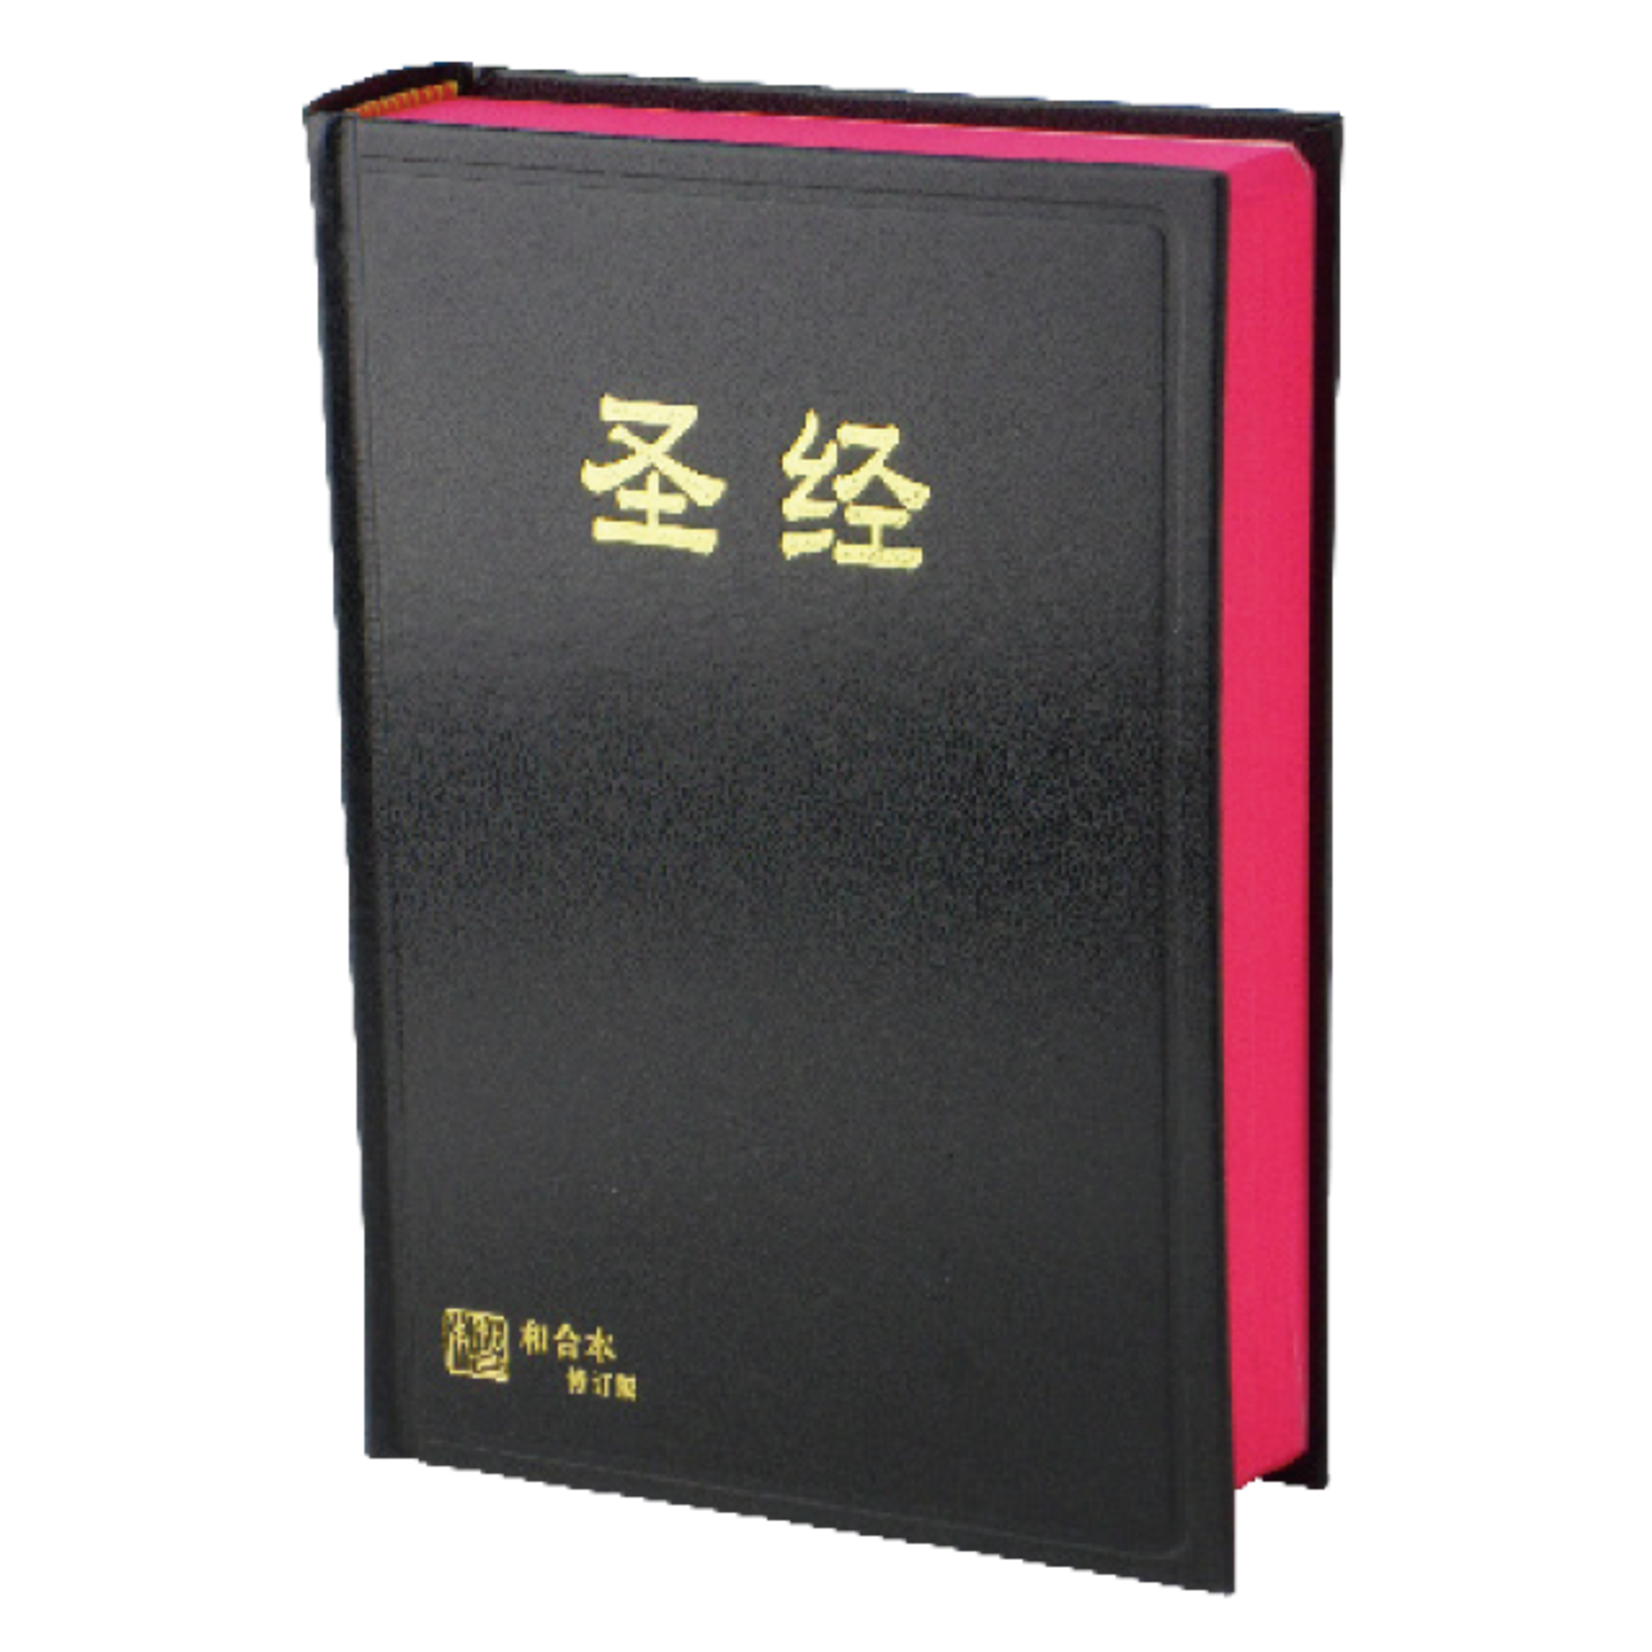 香港聖經公會 Hong Kong Bible Society 聖經．和合本修訂版．神版．黑色硬面紅邊（簡體）